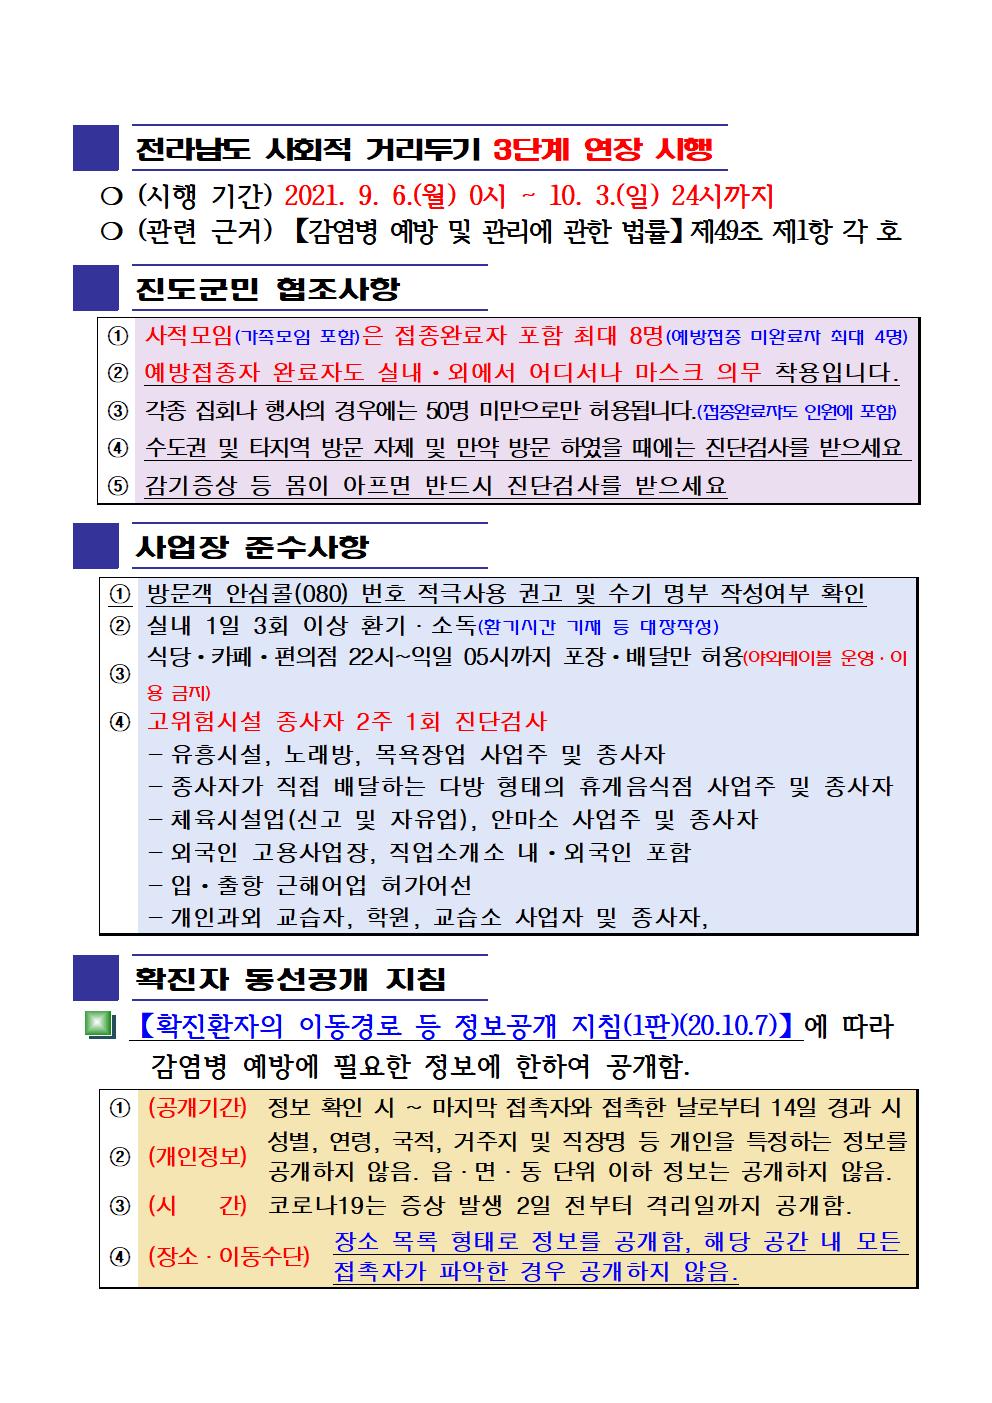 2021년 코로나19 대응 일일상황보고(9월 19일 24시 기준) 첨부#2